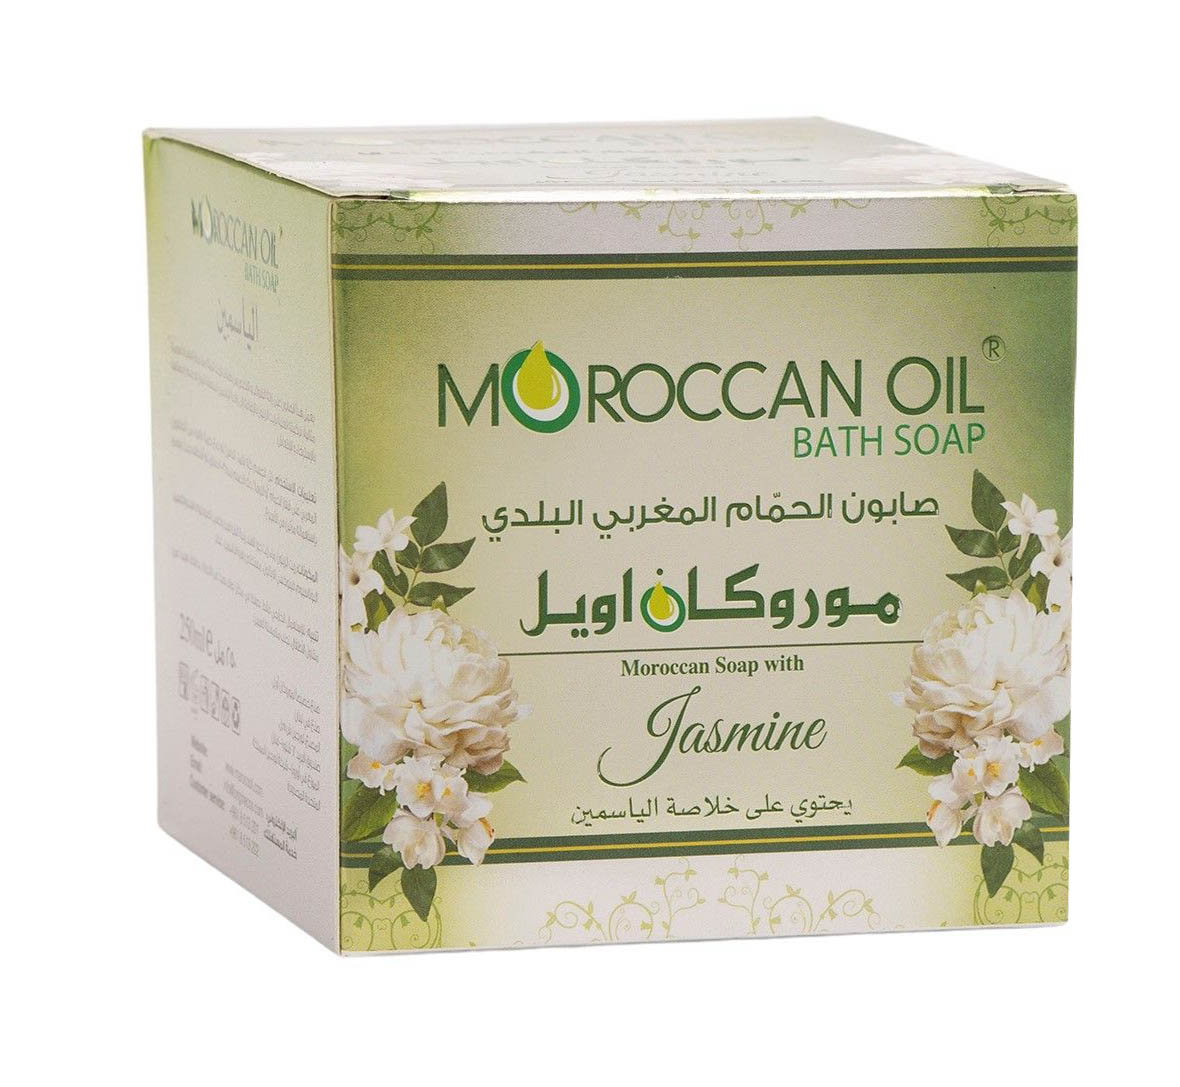 موروكان اويل صابون الحمام المغربي بخلاصة الياسمين - 250 مل - Sidalih.com || صيدلية.كوم